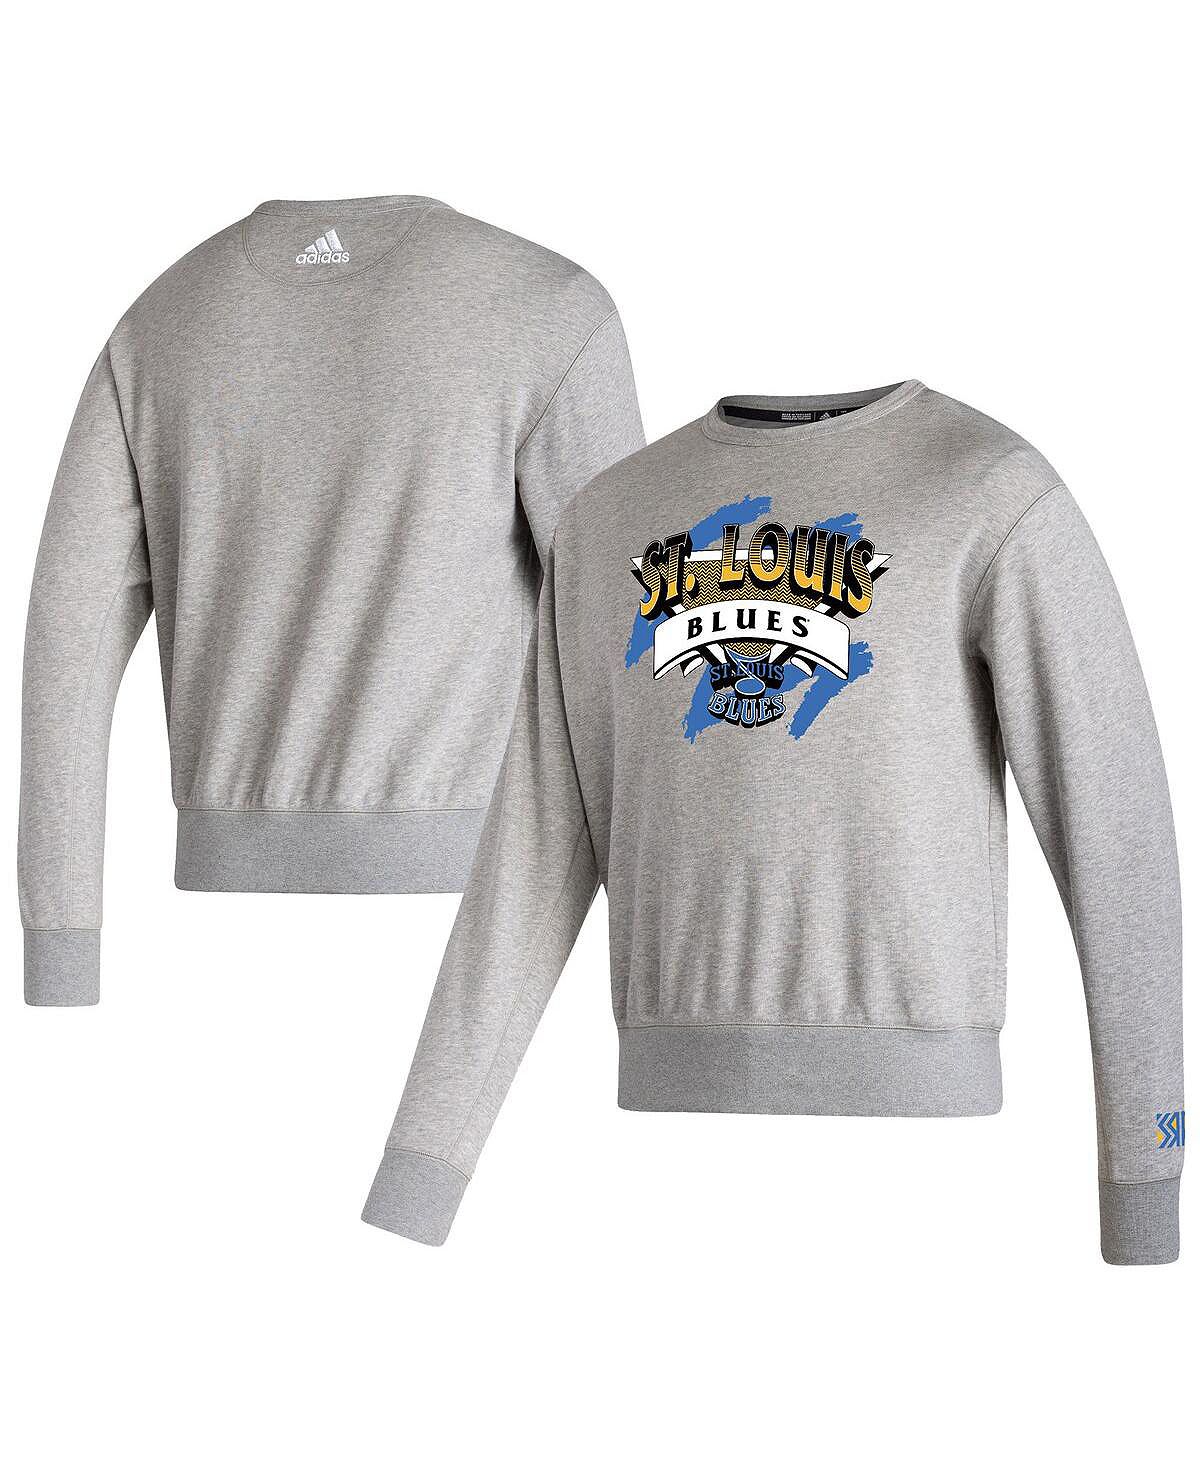 Мужская серая толстовка st. louis blues reverse retro 2.0 vintage-like pullover sweatshirt adidas, серый